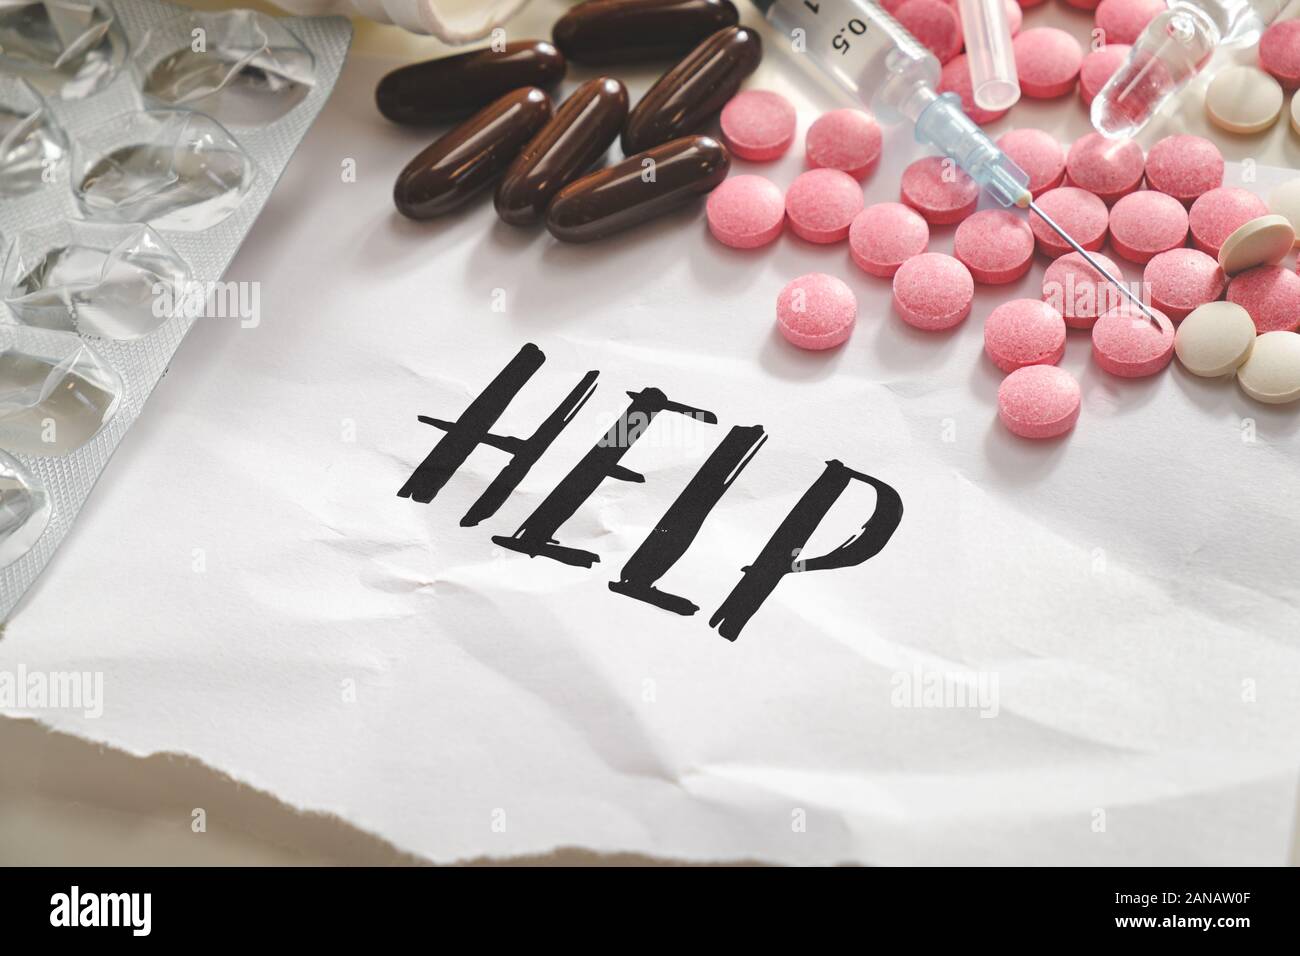 Wort 'Hilfe' in der Haufen von Pillen, Tabletten und Spritzen. Konzept der Drogenmissbrauch, Überdosis oder illegale Drogen dependancy Stockfoto